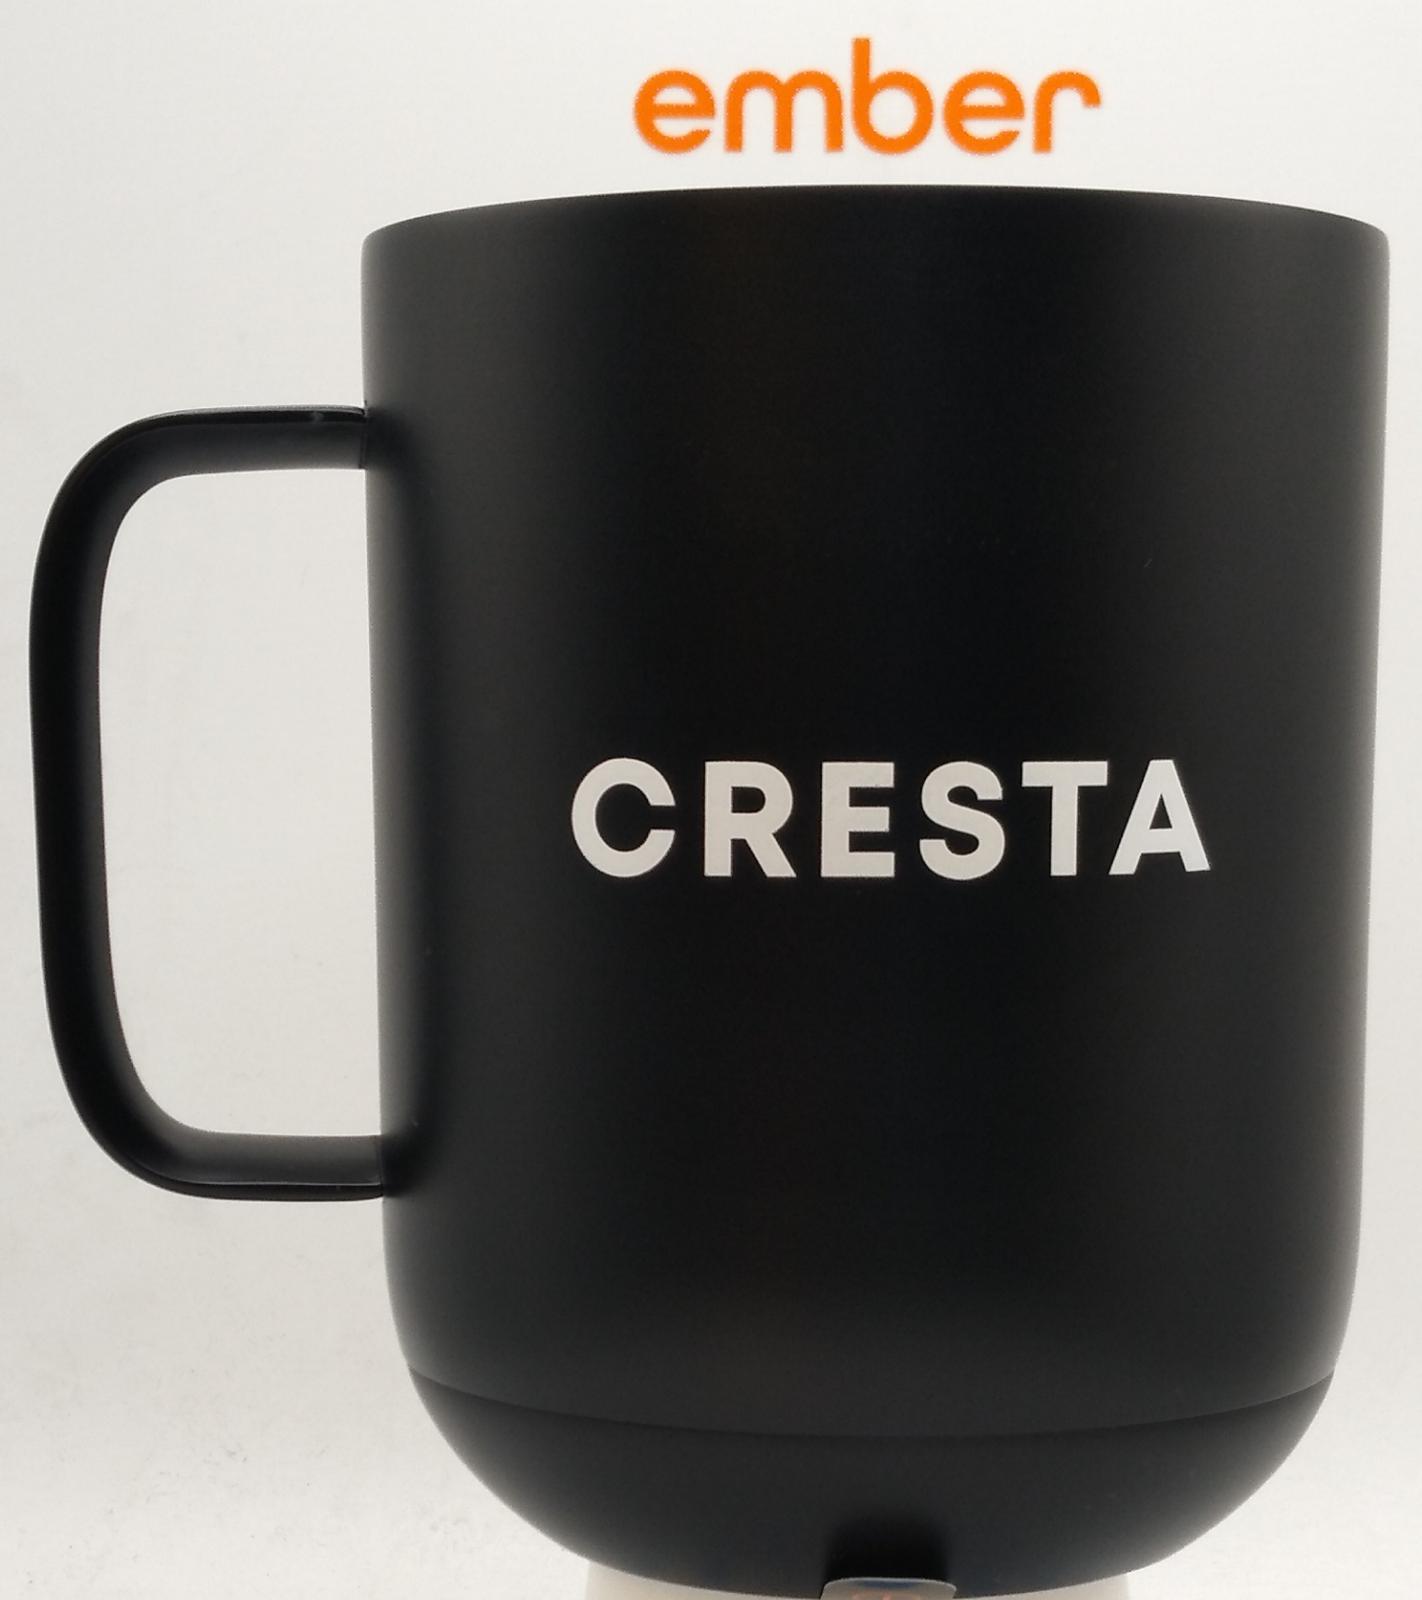 Ember Ceramic Mug 10oz custom printed coffee mug with your company logo